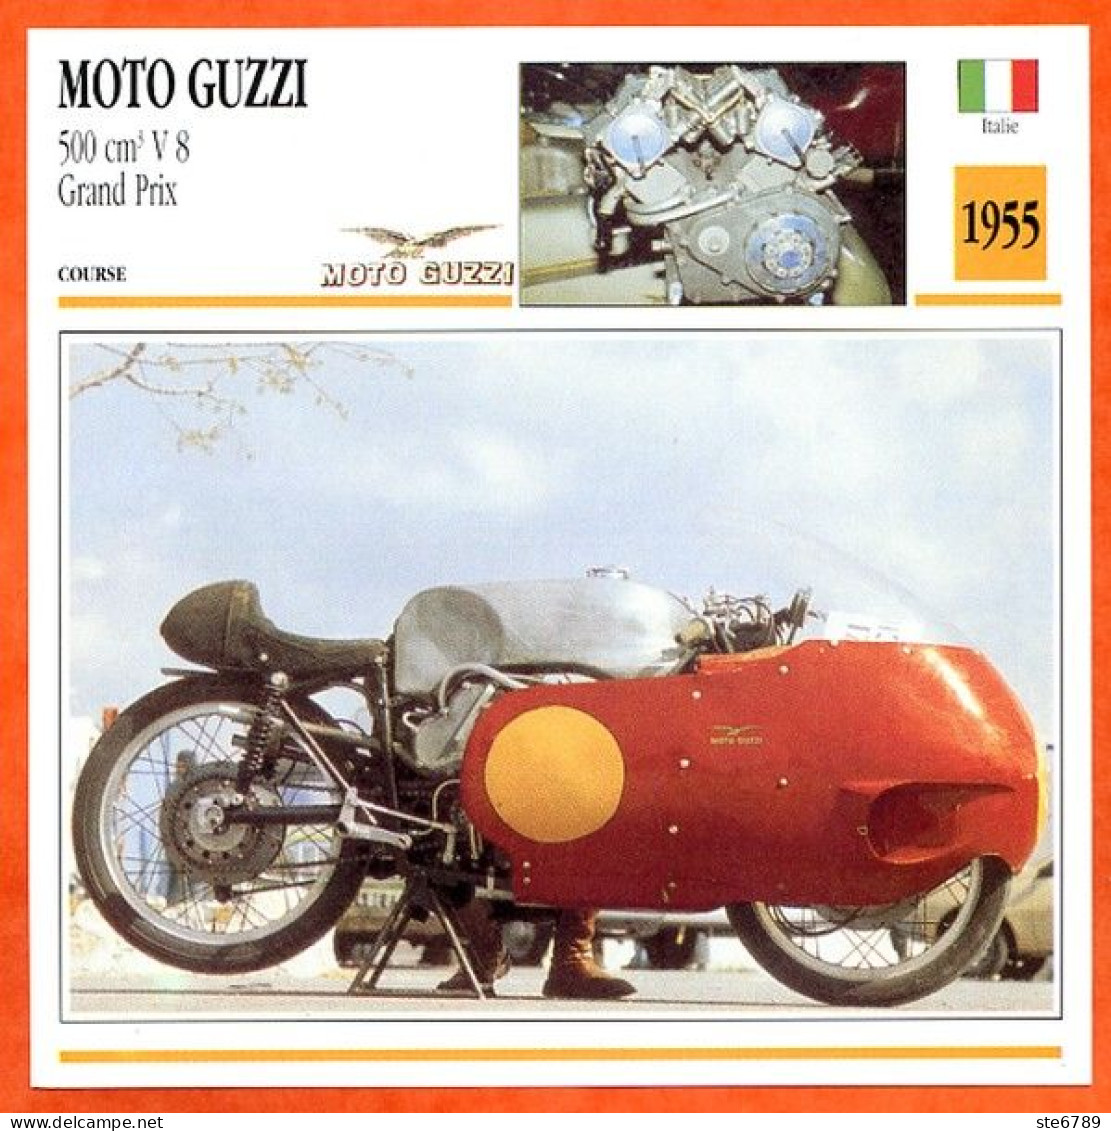 MOTO GUZZI 500 V8 Grand Prix 1955 Italie Fiche Technique Moto - Sports